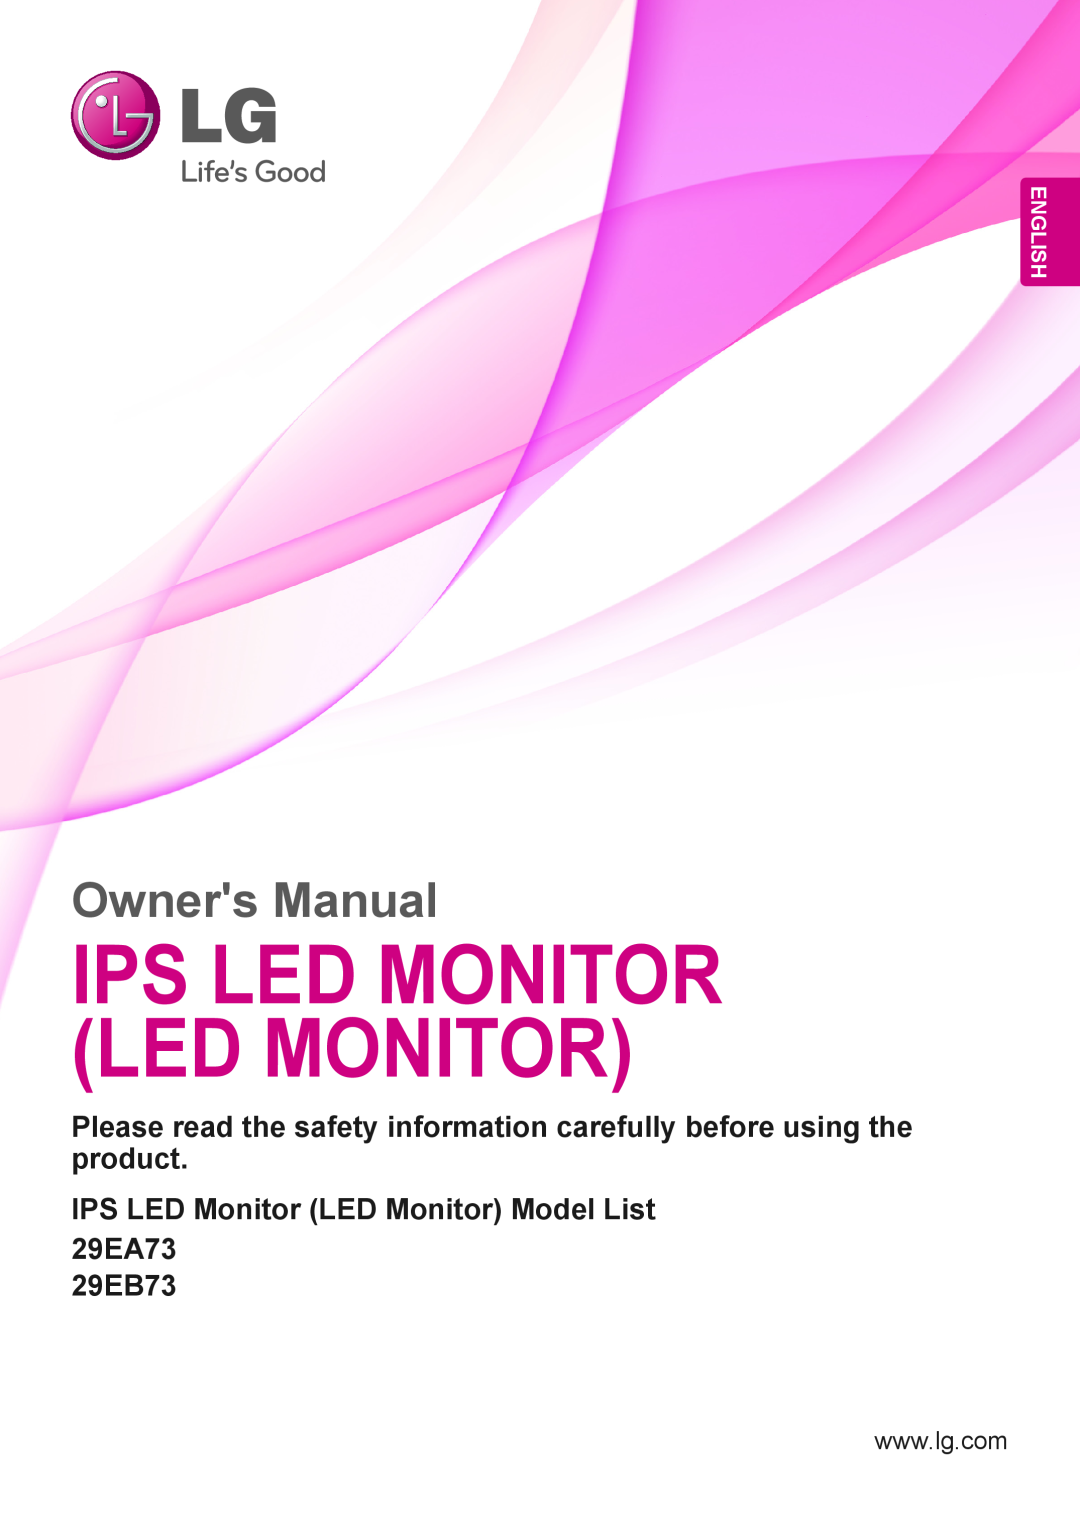 LG Electronics 29EA73, 29EB73 owner manual Ips Led Monitor Led Monitor, Owners Manual, English 